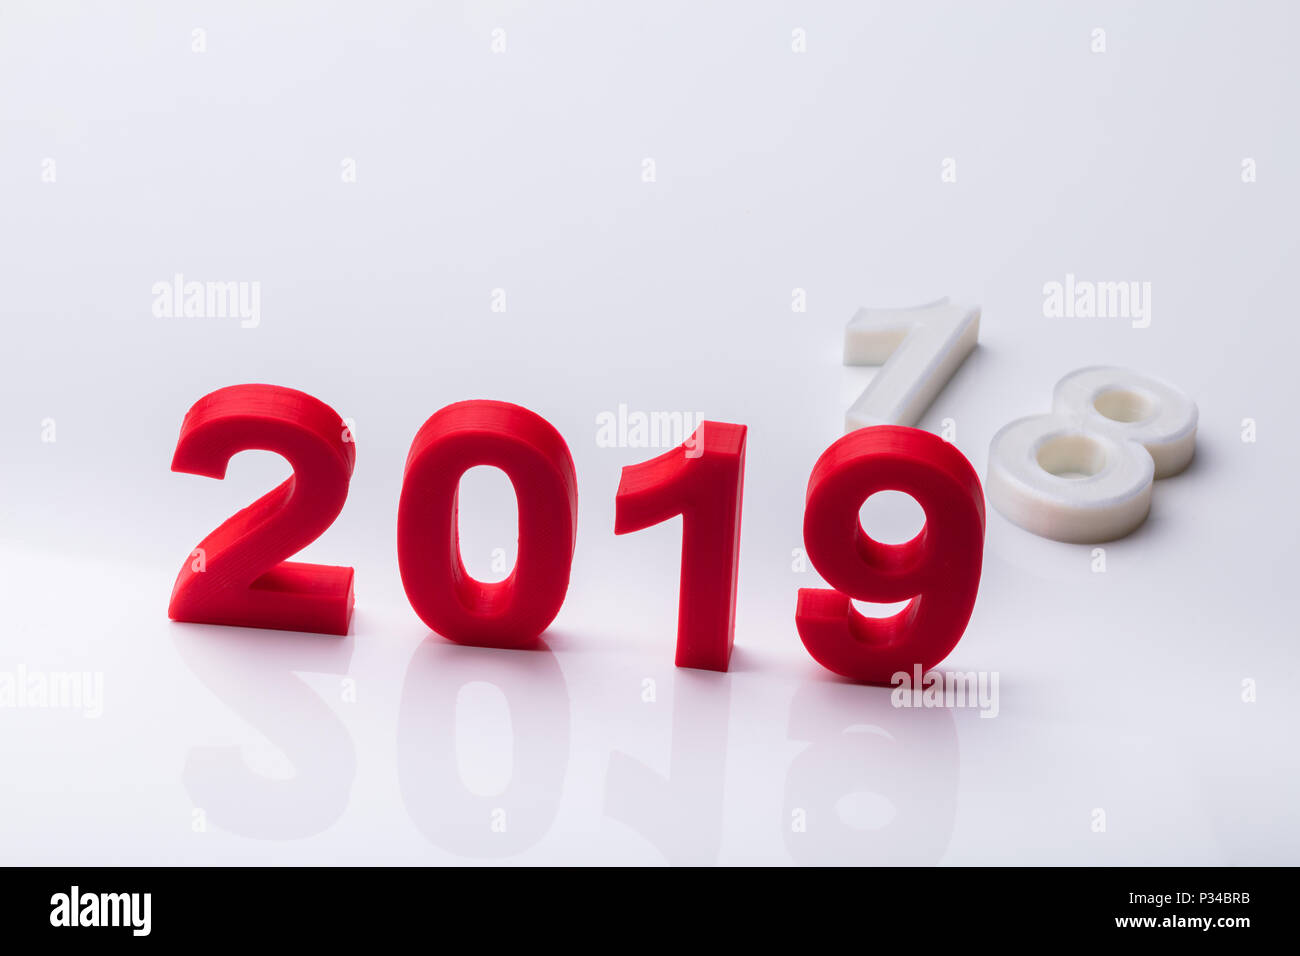 Anno 2019 sostituito con il vecchio anno 2018 su sfondo riflettente Foto Stock